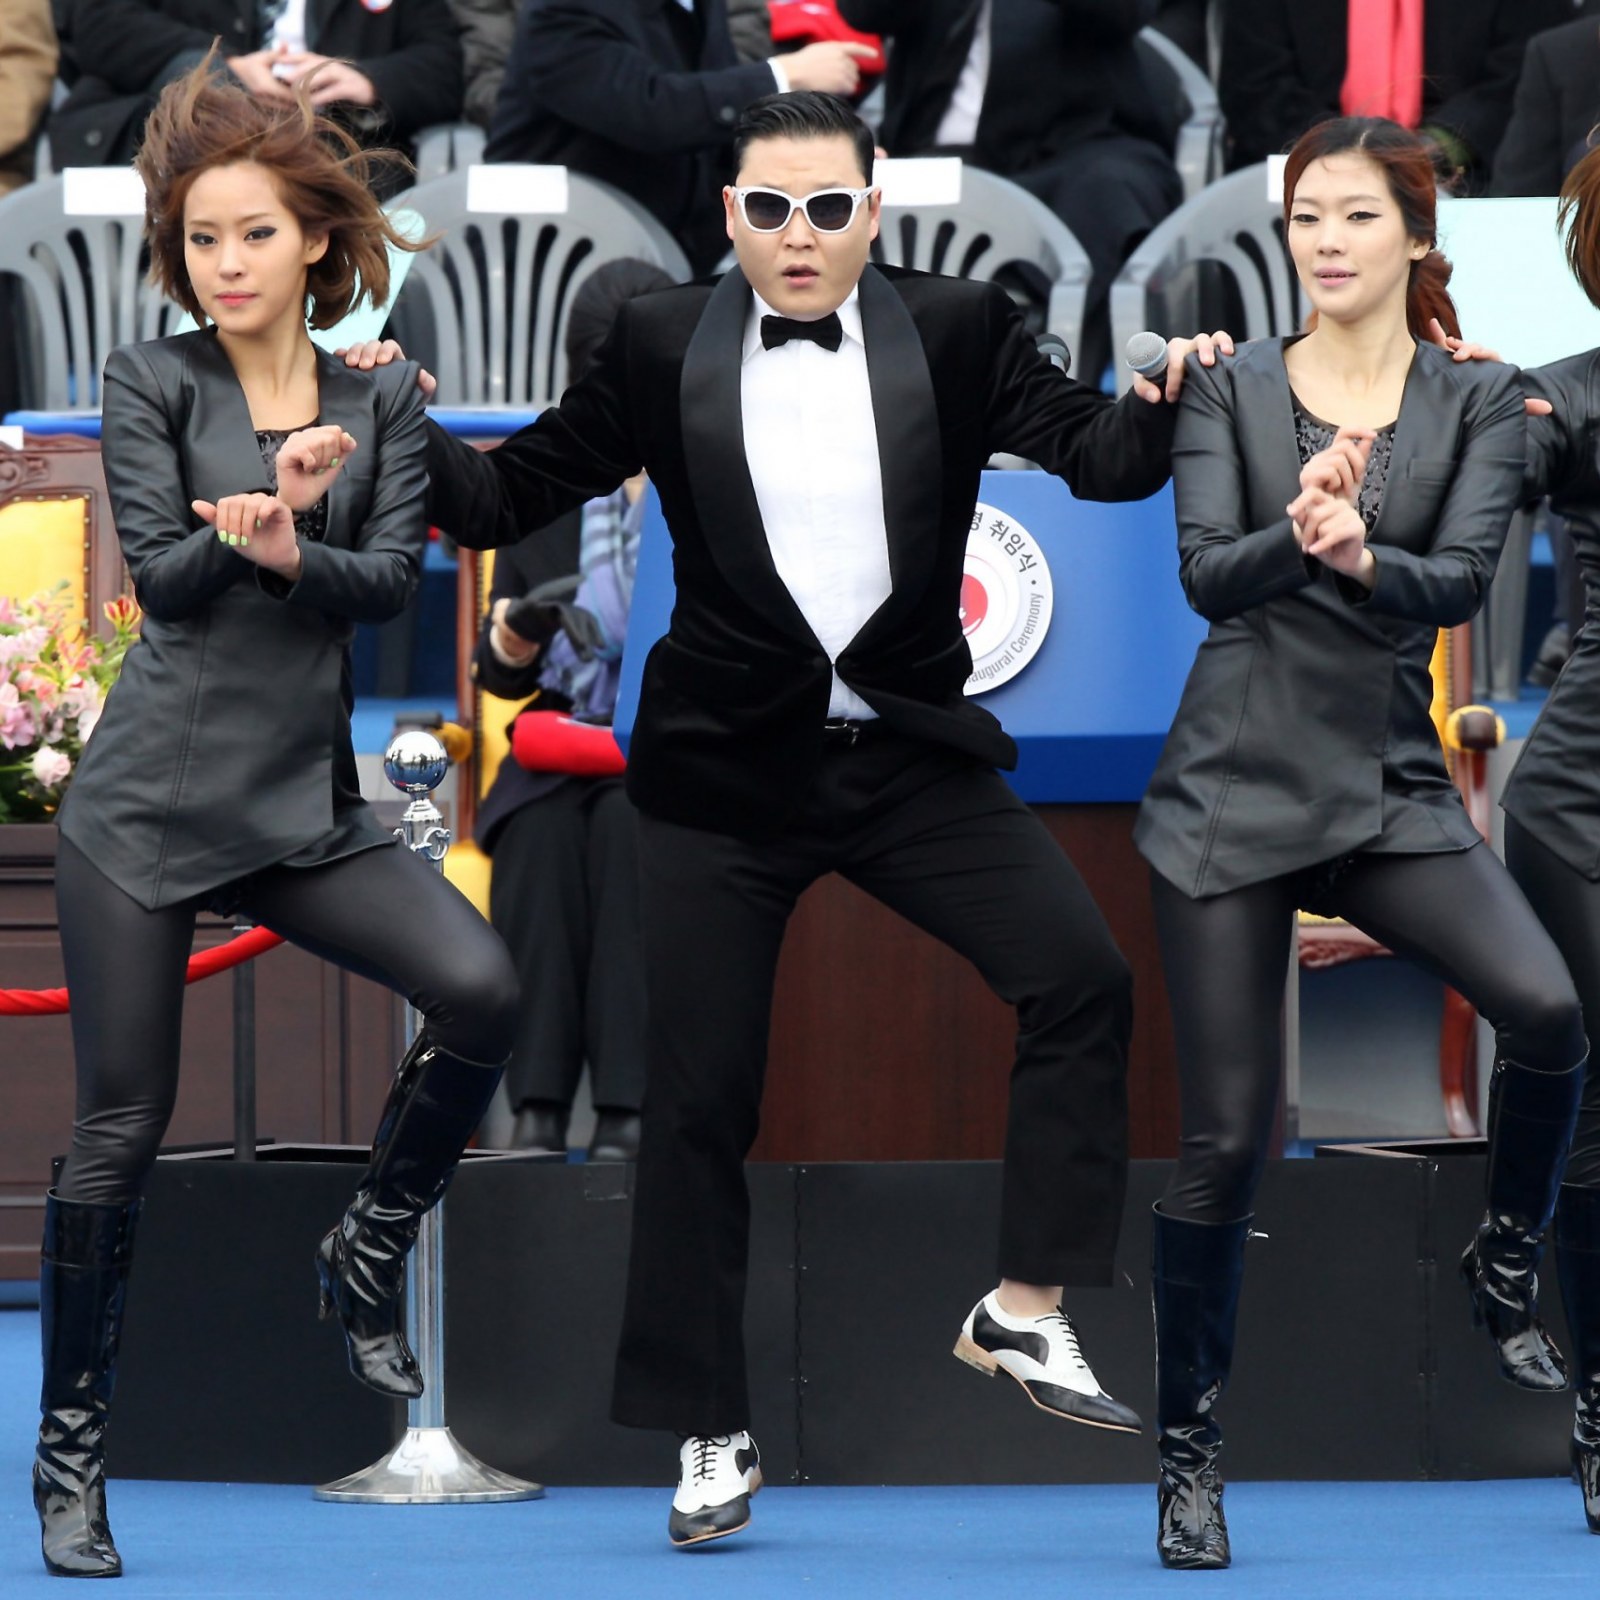 krone Elastisk bibel Will North Korea Let 'Gangnam Style' Singer Psy Perform in Pyongyang?